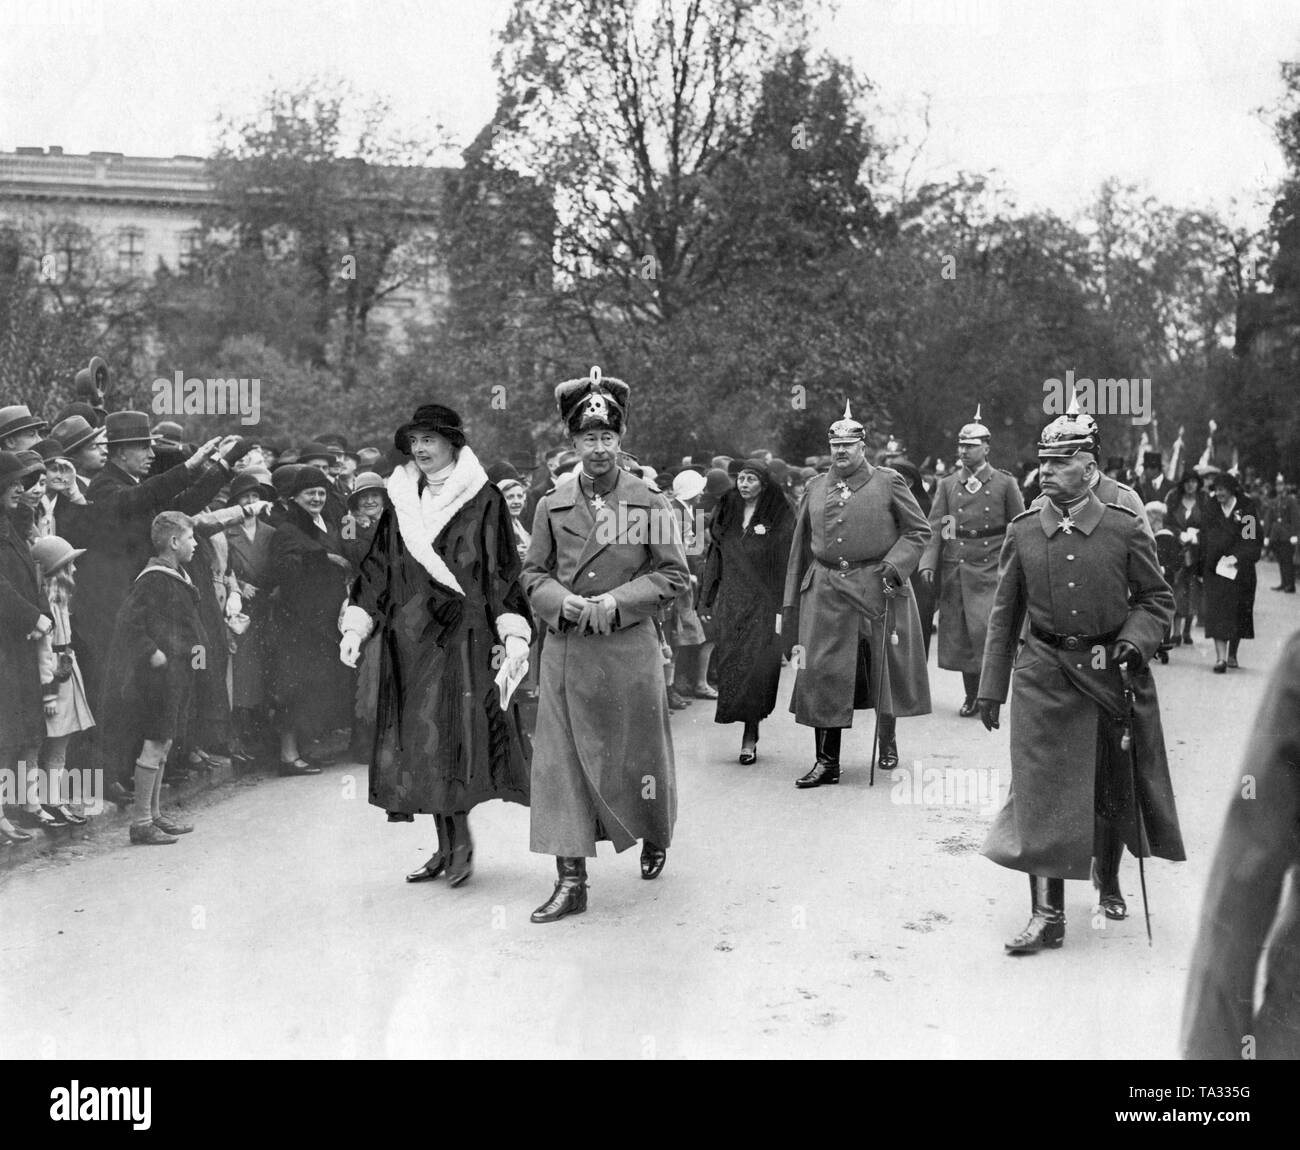 Crown Princess Cecilie de Mecklenburg (1er rang à gauche) et le Prince Guillaume de Prusse (1er rang au centre) sur le chemin de la paix dans l'église de service à Berlin. Ils sont accompagnés, entre autres, par Sophie Charlotte d'Oldenburg (2ème rang à gauche), son époux, le Prince Eitel Friedrich de Prusse (2ème rang à droite), la Comtesse Marie von Bassewitz Ina (3e rangée à gauche), son époux, le Prince Oscar de Prusse (3e rangée à droite). Banque D'Images